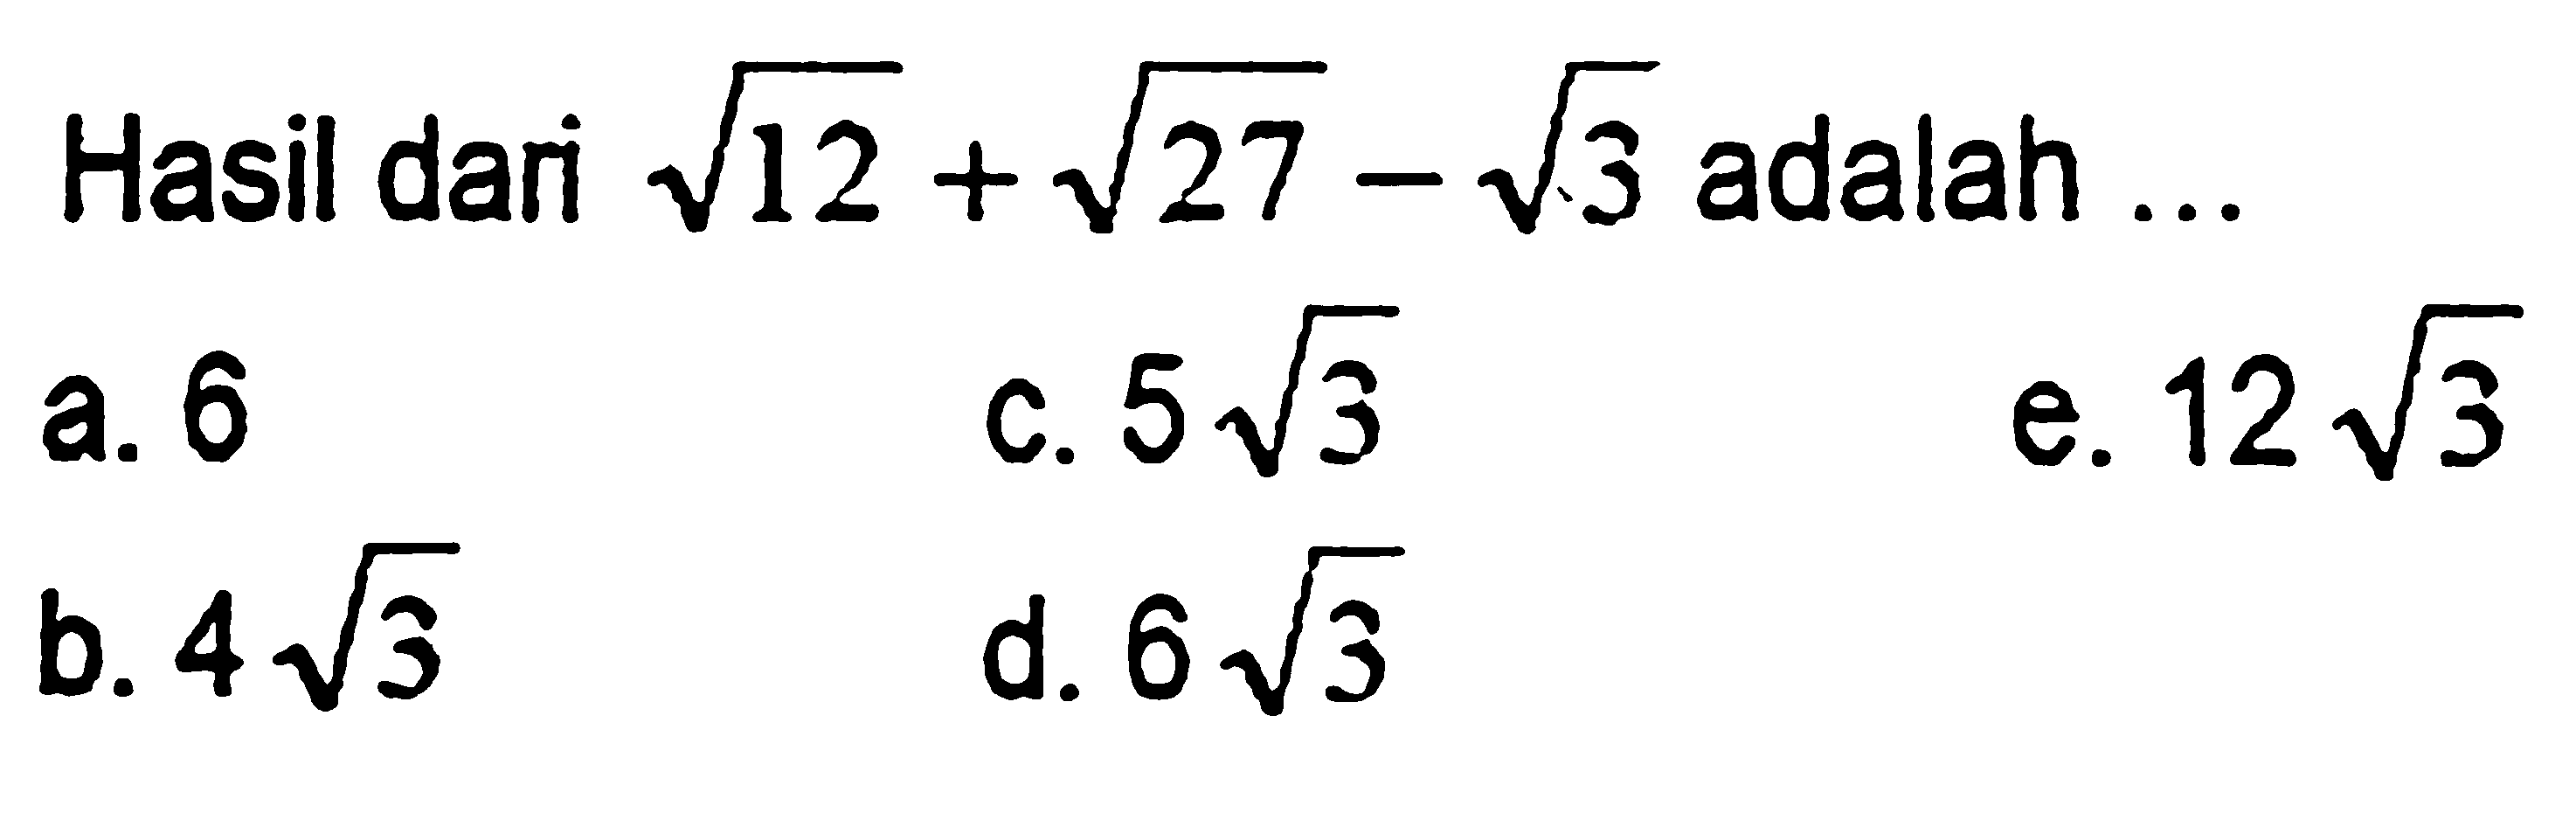 Hasil dari akar(12) + akar(27) - akar(3) adalah .... a. 6 b. 4 akar(3) c. 5 akar(3) d. 6 akar(3) e. 12 akar(3)